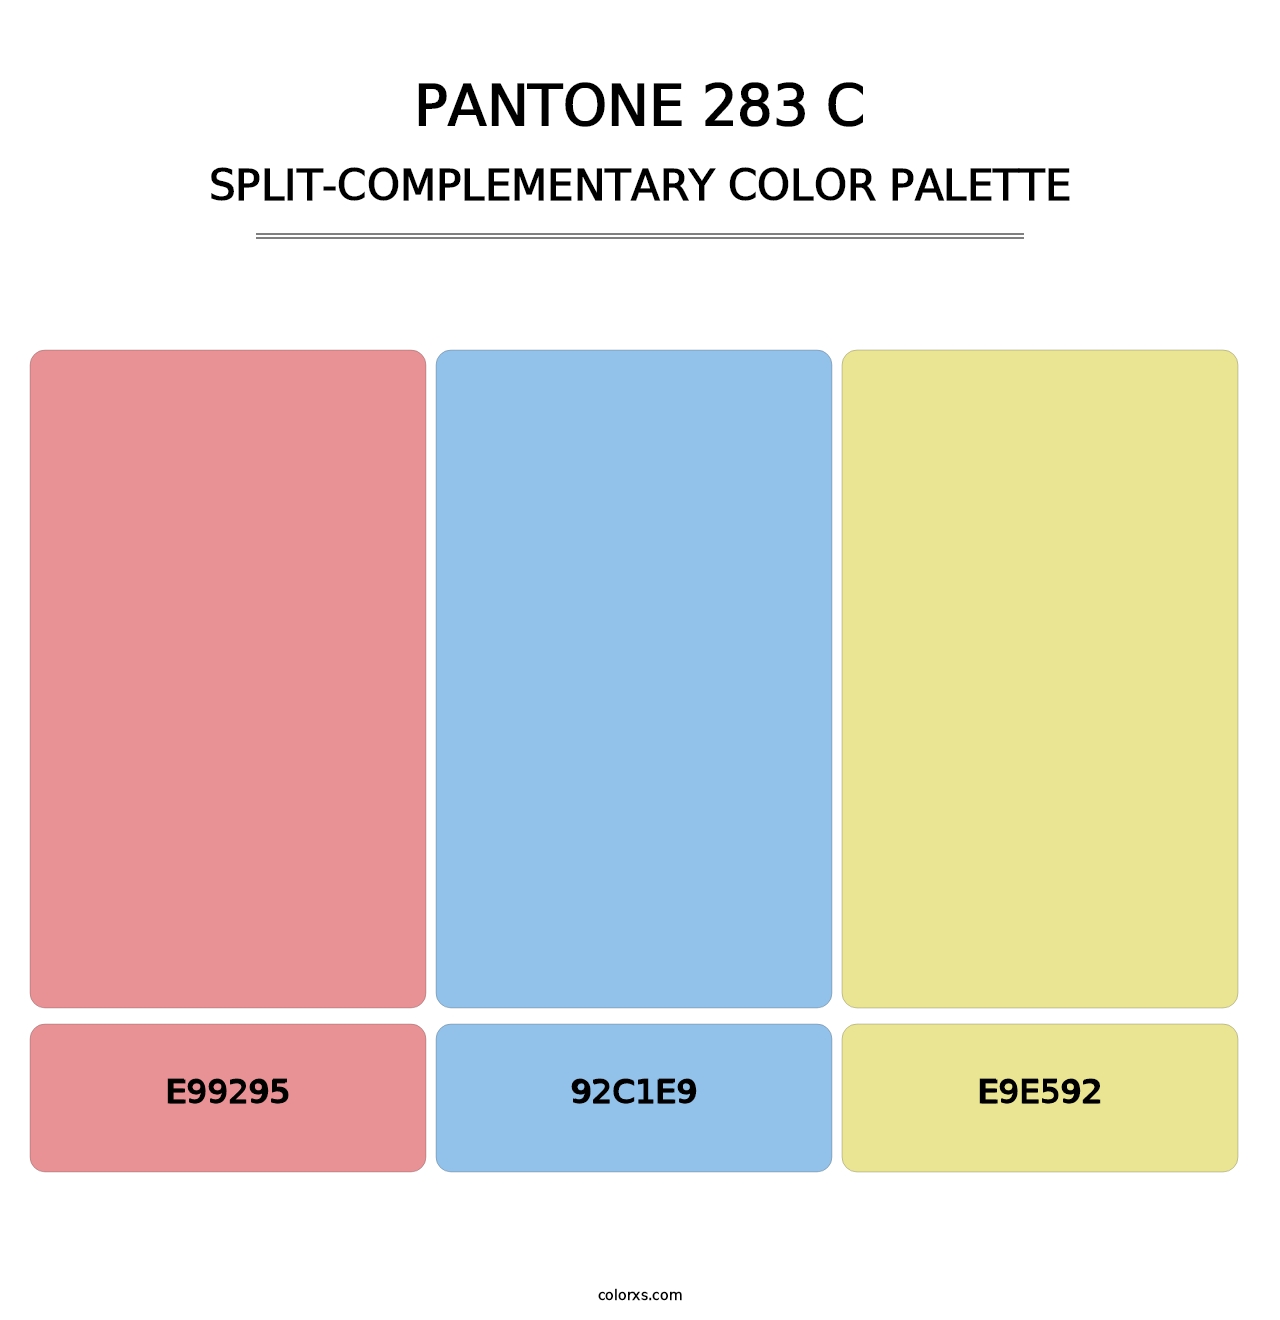 PANTONE 283 C - Split-Complementary Color Palette